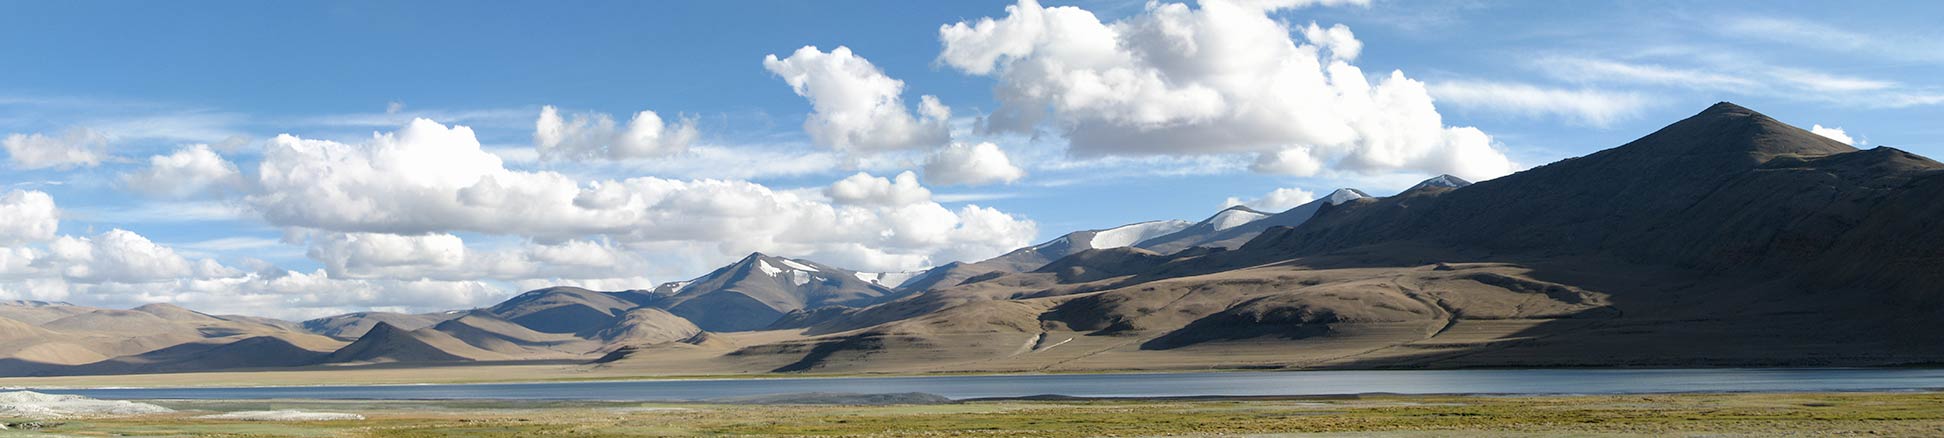 Panorama of Tso Kar lake in Ladakh